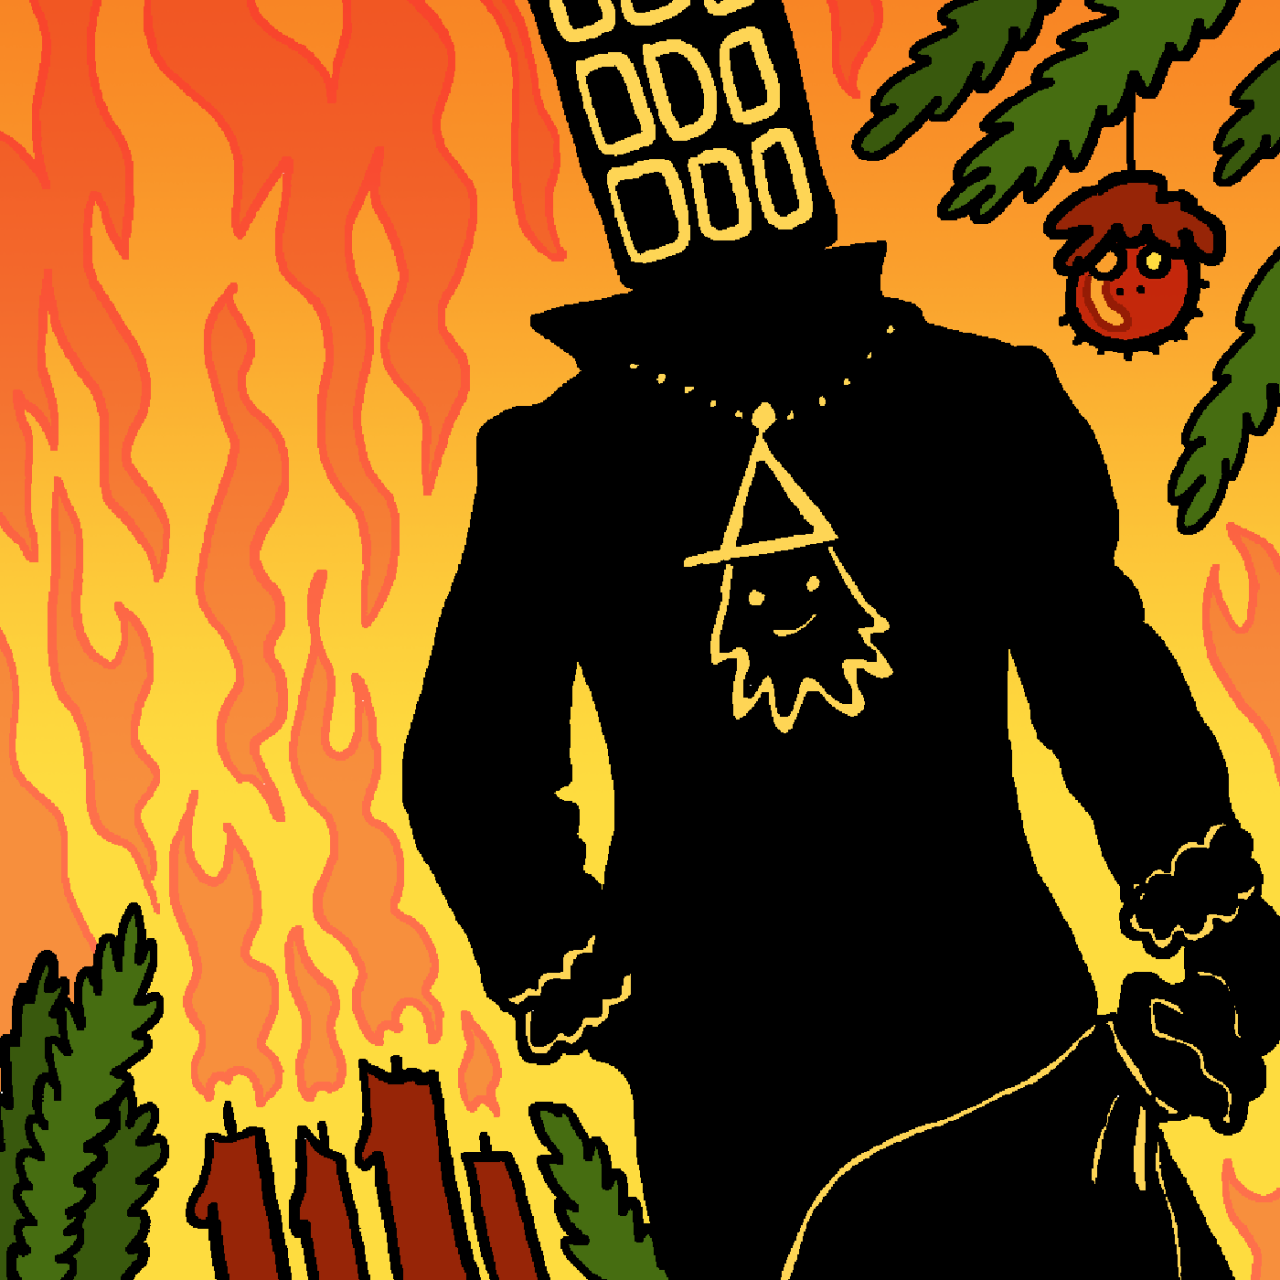 Eine selbst gezeichnete Version des Original-Covers von Folge 96 "Der rote Rächer". Marcus ist eine dunkle Gestalt mit einem Anhänger, der wie Tim aussieht. Im Hintergrund brennt ein Adventskranz und Jeffs Gesicht ist auf einer Christbaumkugel zu sehen.